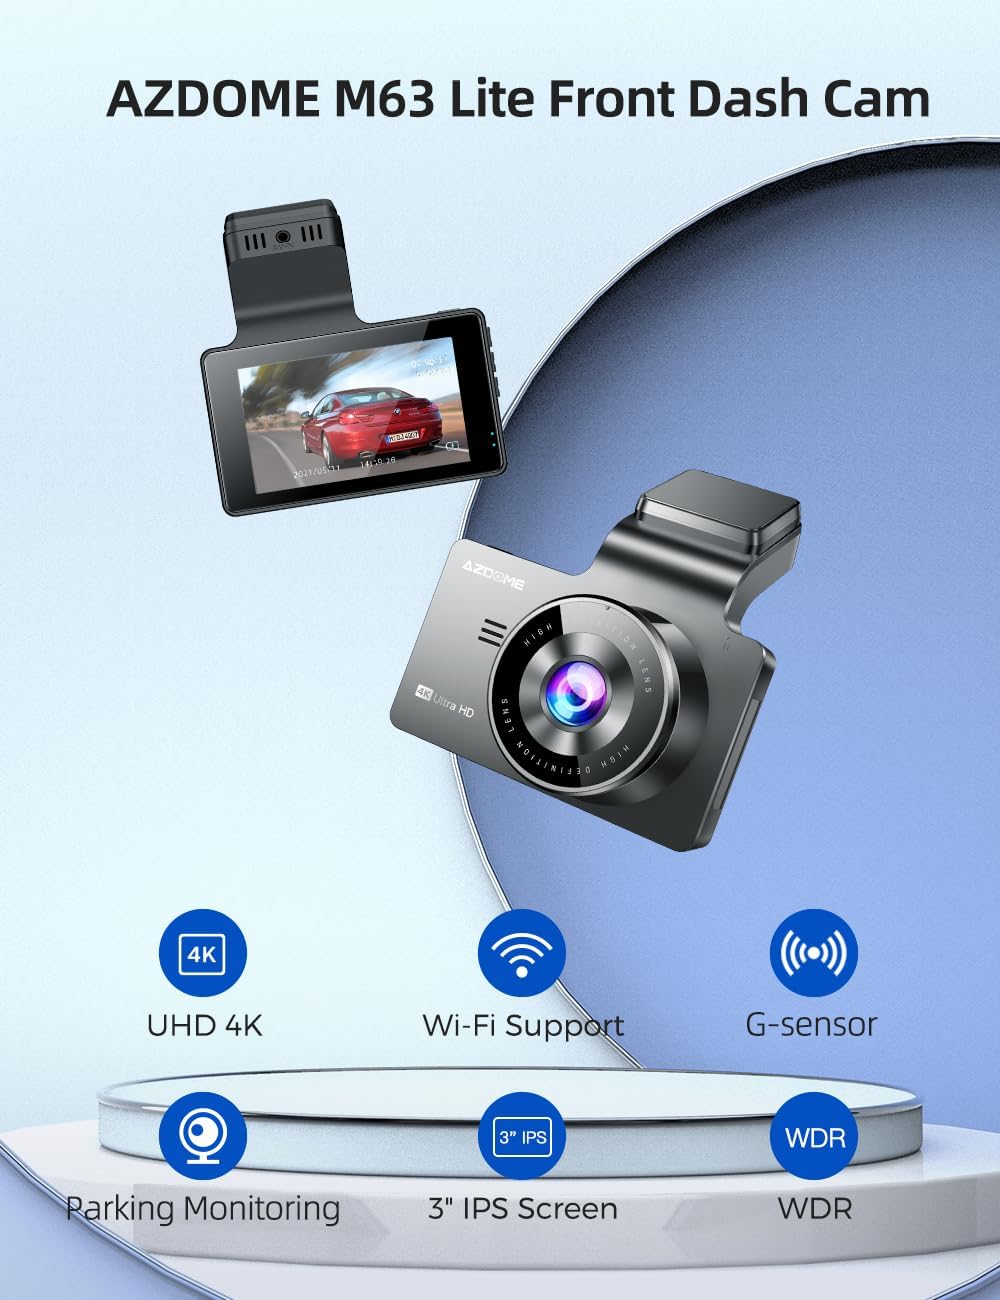 Rove R2-4K Dash Cam 4K Ultra HD 2160P Dash Board Camera Built In WiFi & GPS  - Special Offer